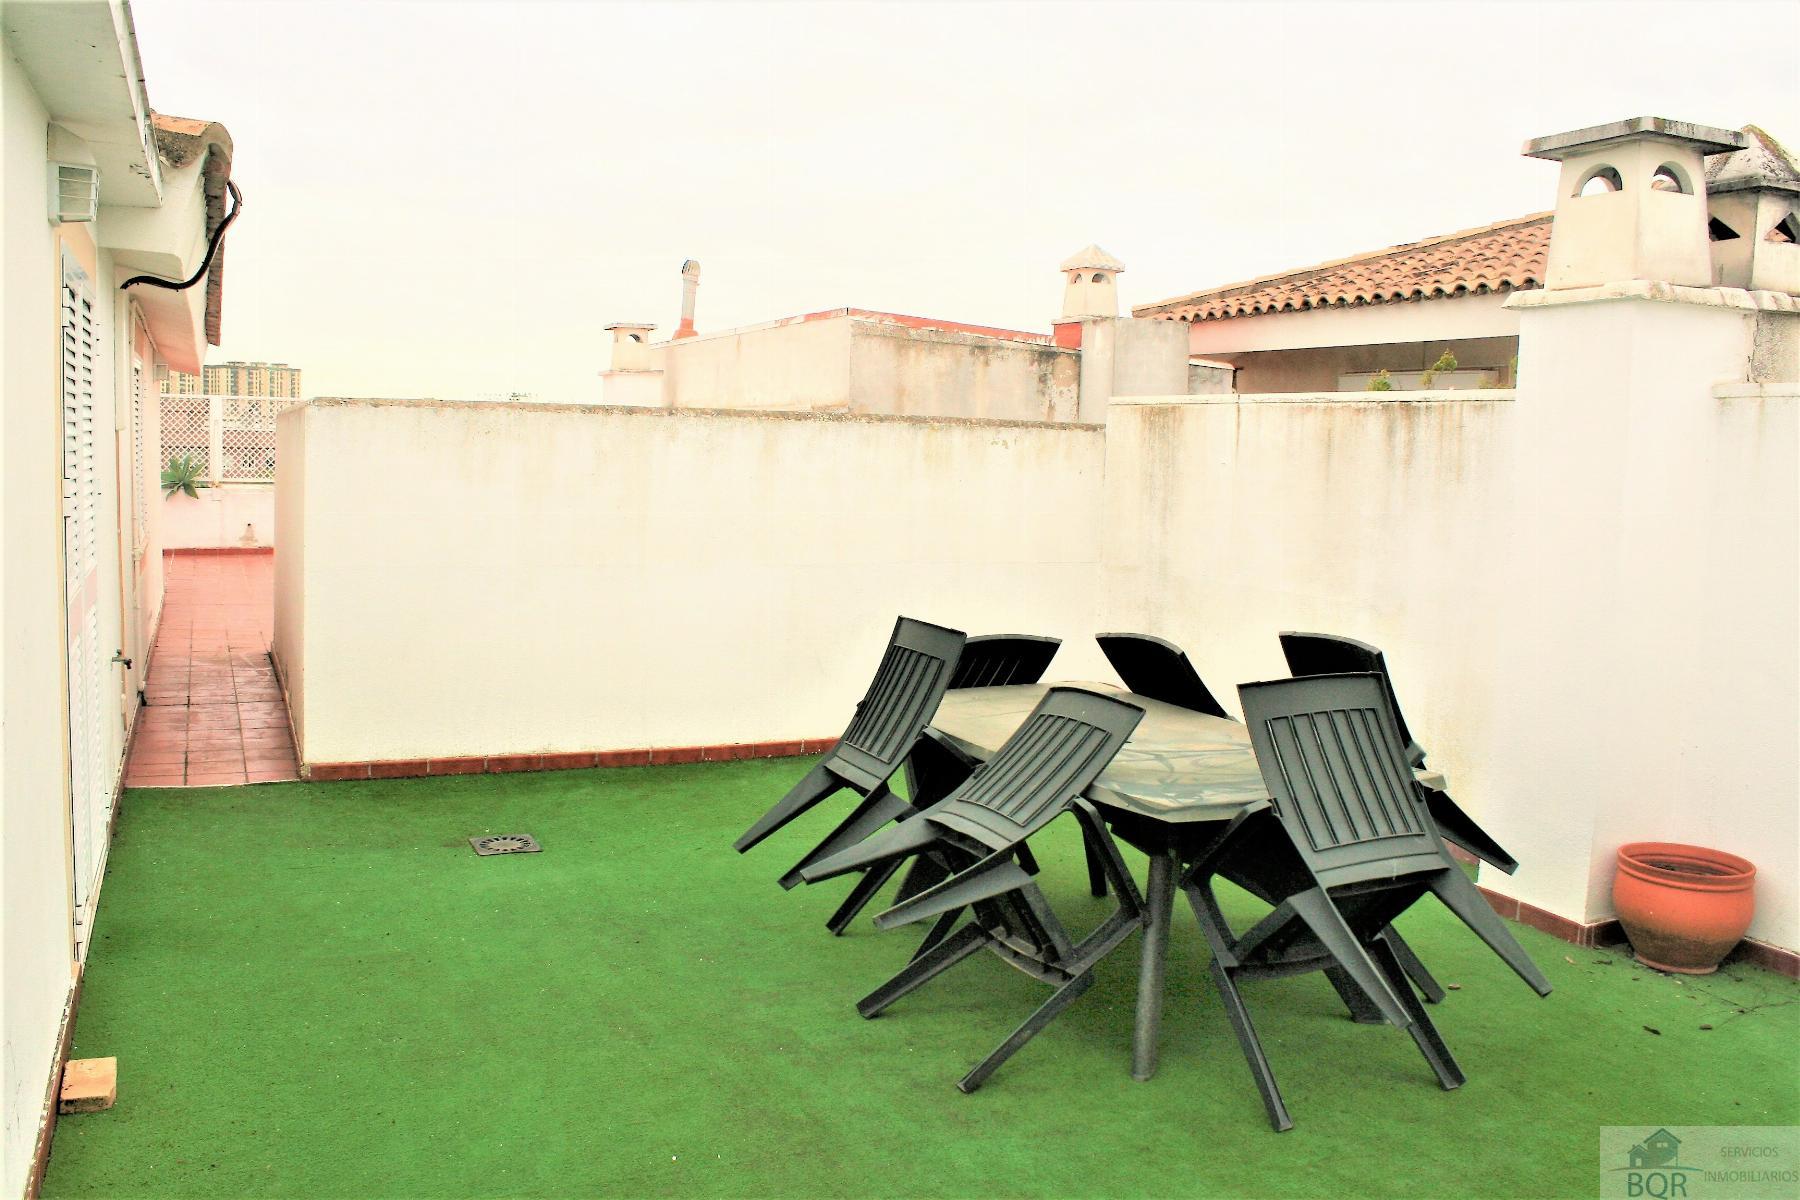 Köp av takvåning i Jerez de la Frontera